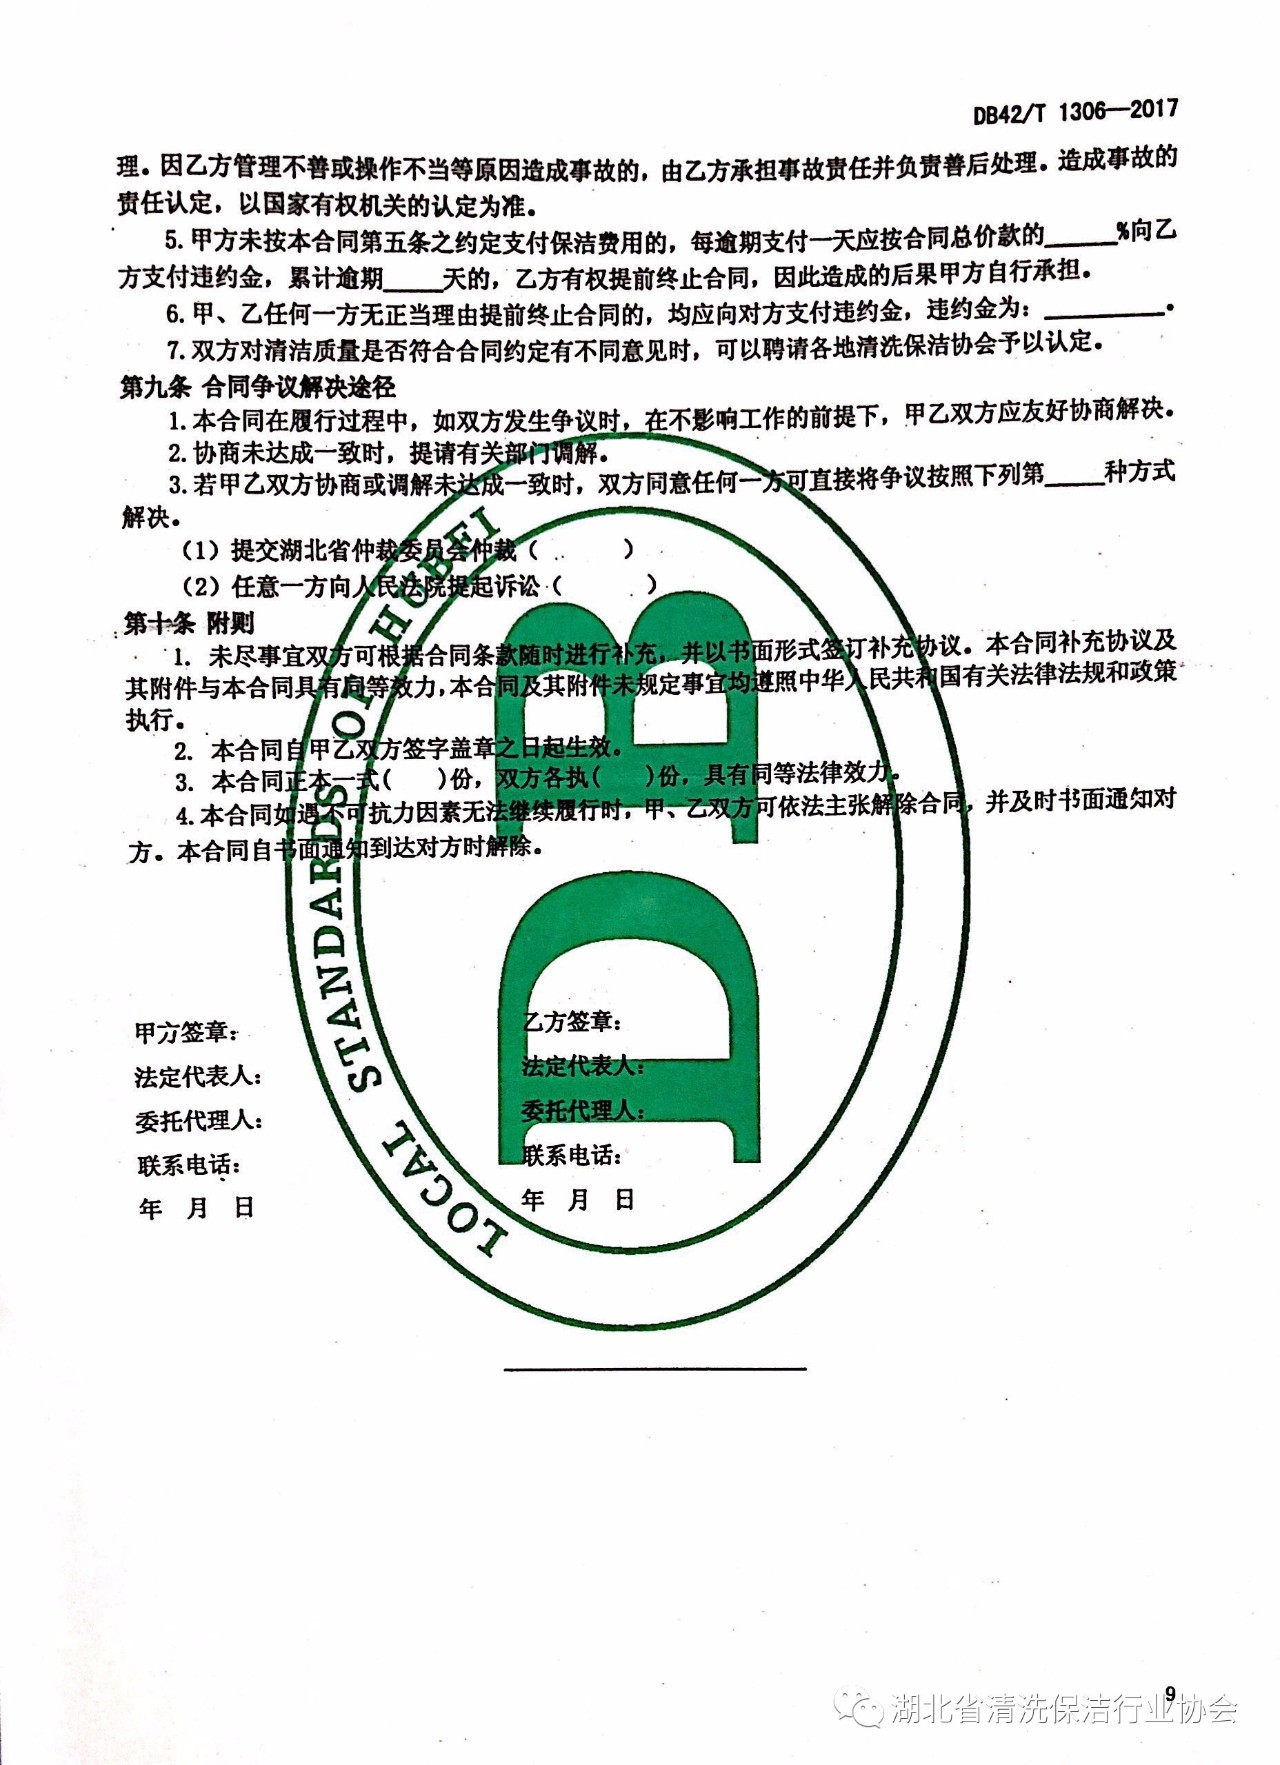 湖北省清洗保洁行业协会第一部地方标准《保洁服务通则》颁布实施13.jpg